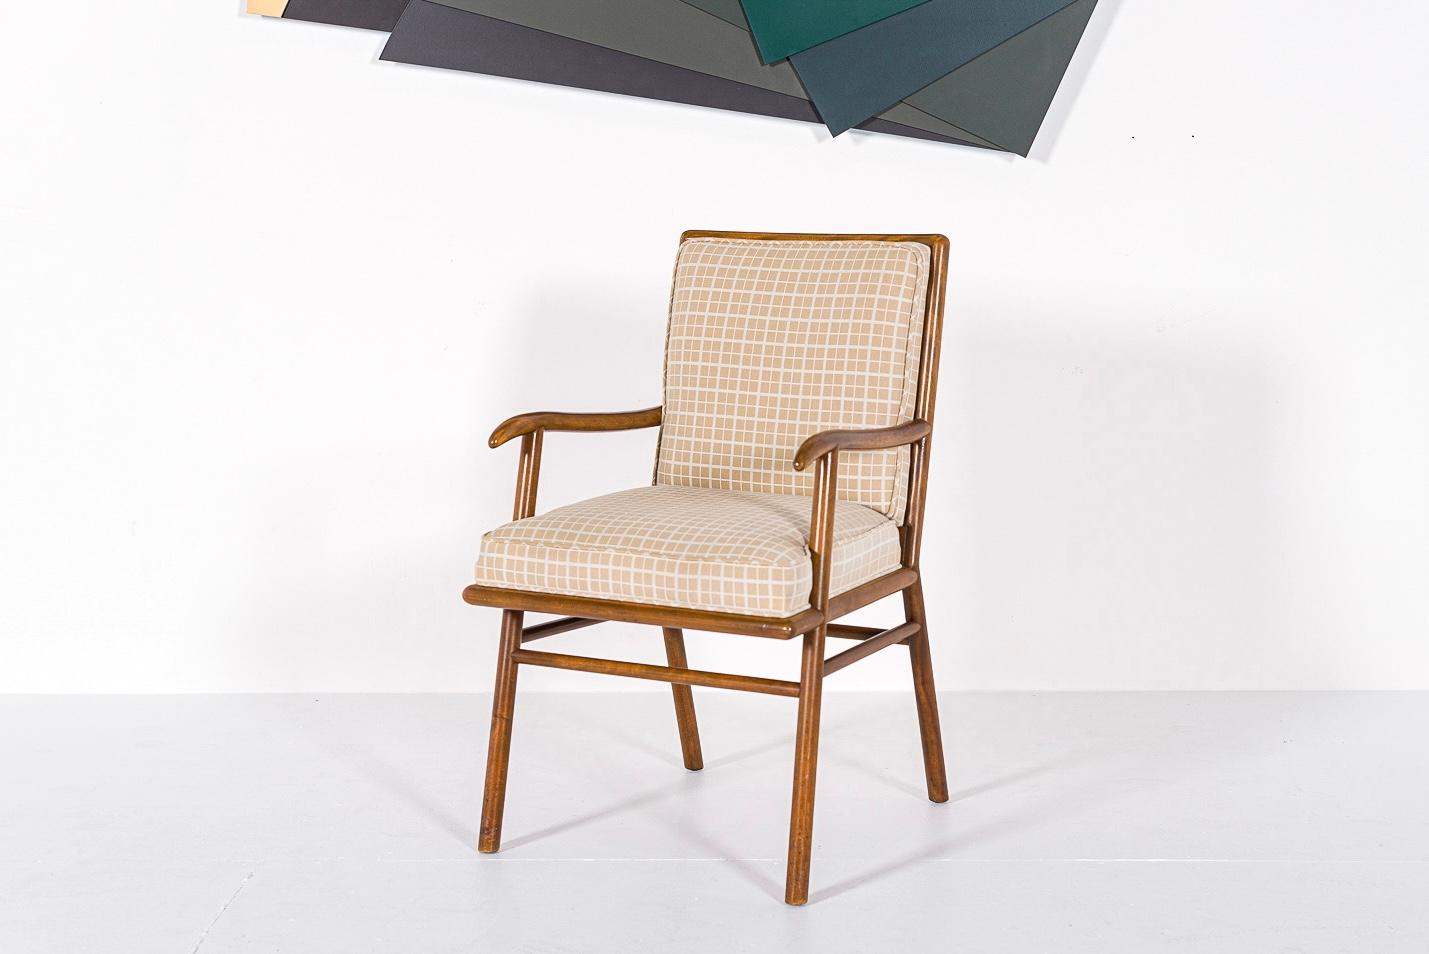 Ce magnifique fauteuil vintage moderne du milieu du siècle dernier a été conçu par T.H. Robsjohn-Gibbings (anglais, 1905-1976) pour Widdicomb vers 1950. Son design unique et élégant se caractérise par des lignes épurées et minimalistes et des